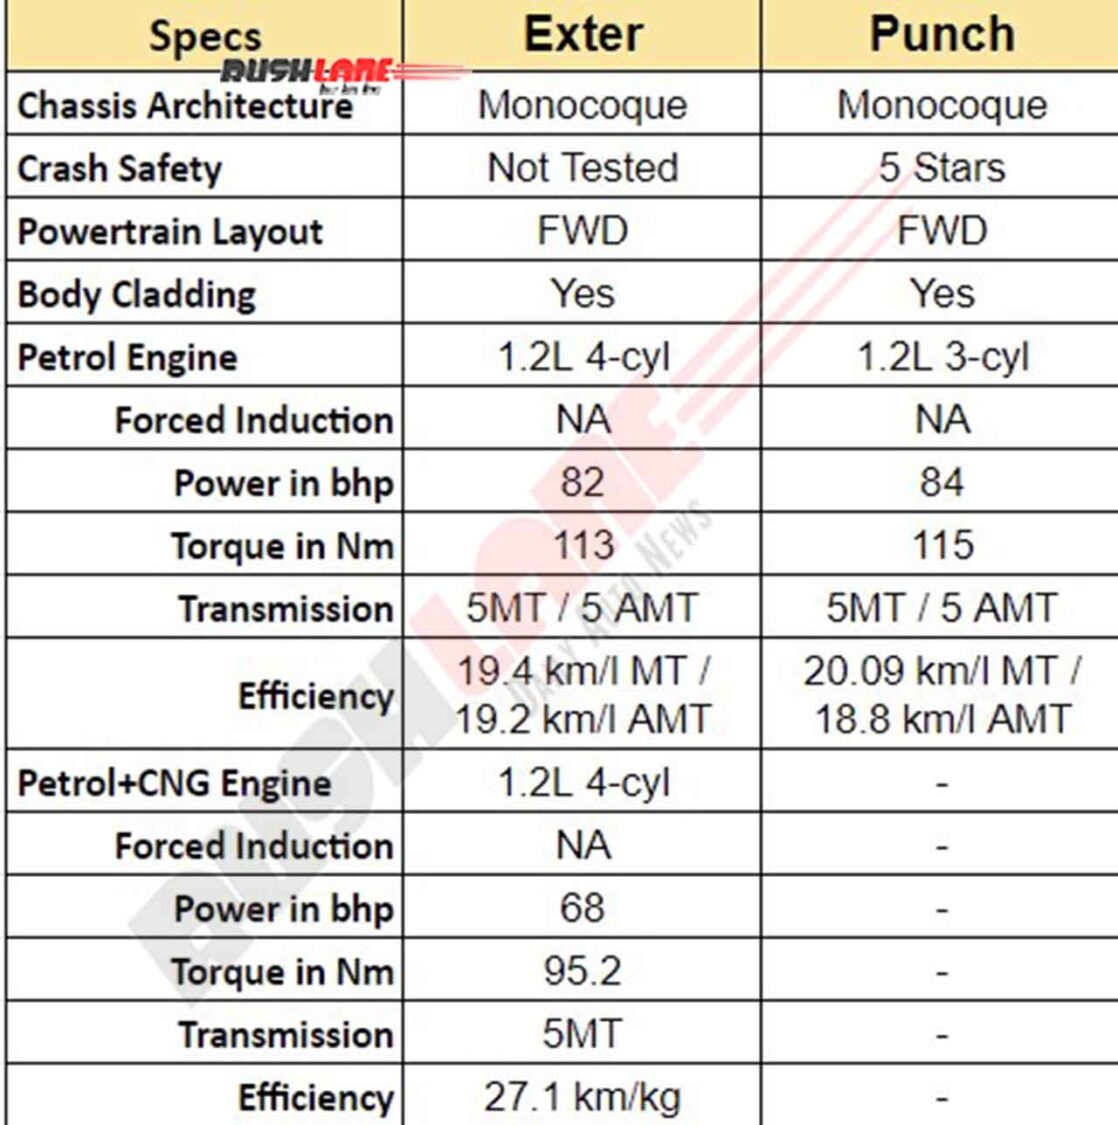 Hyundai Exter vs Tata Punch - Specs